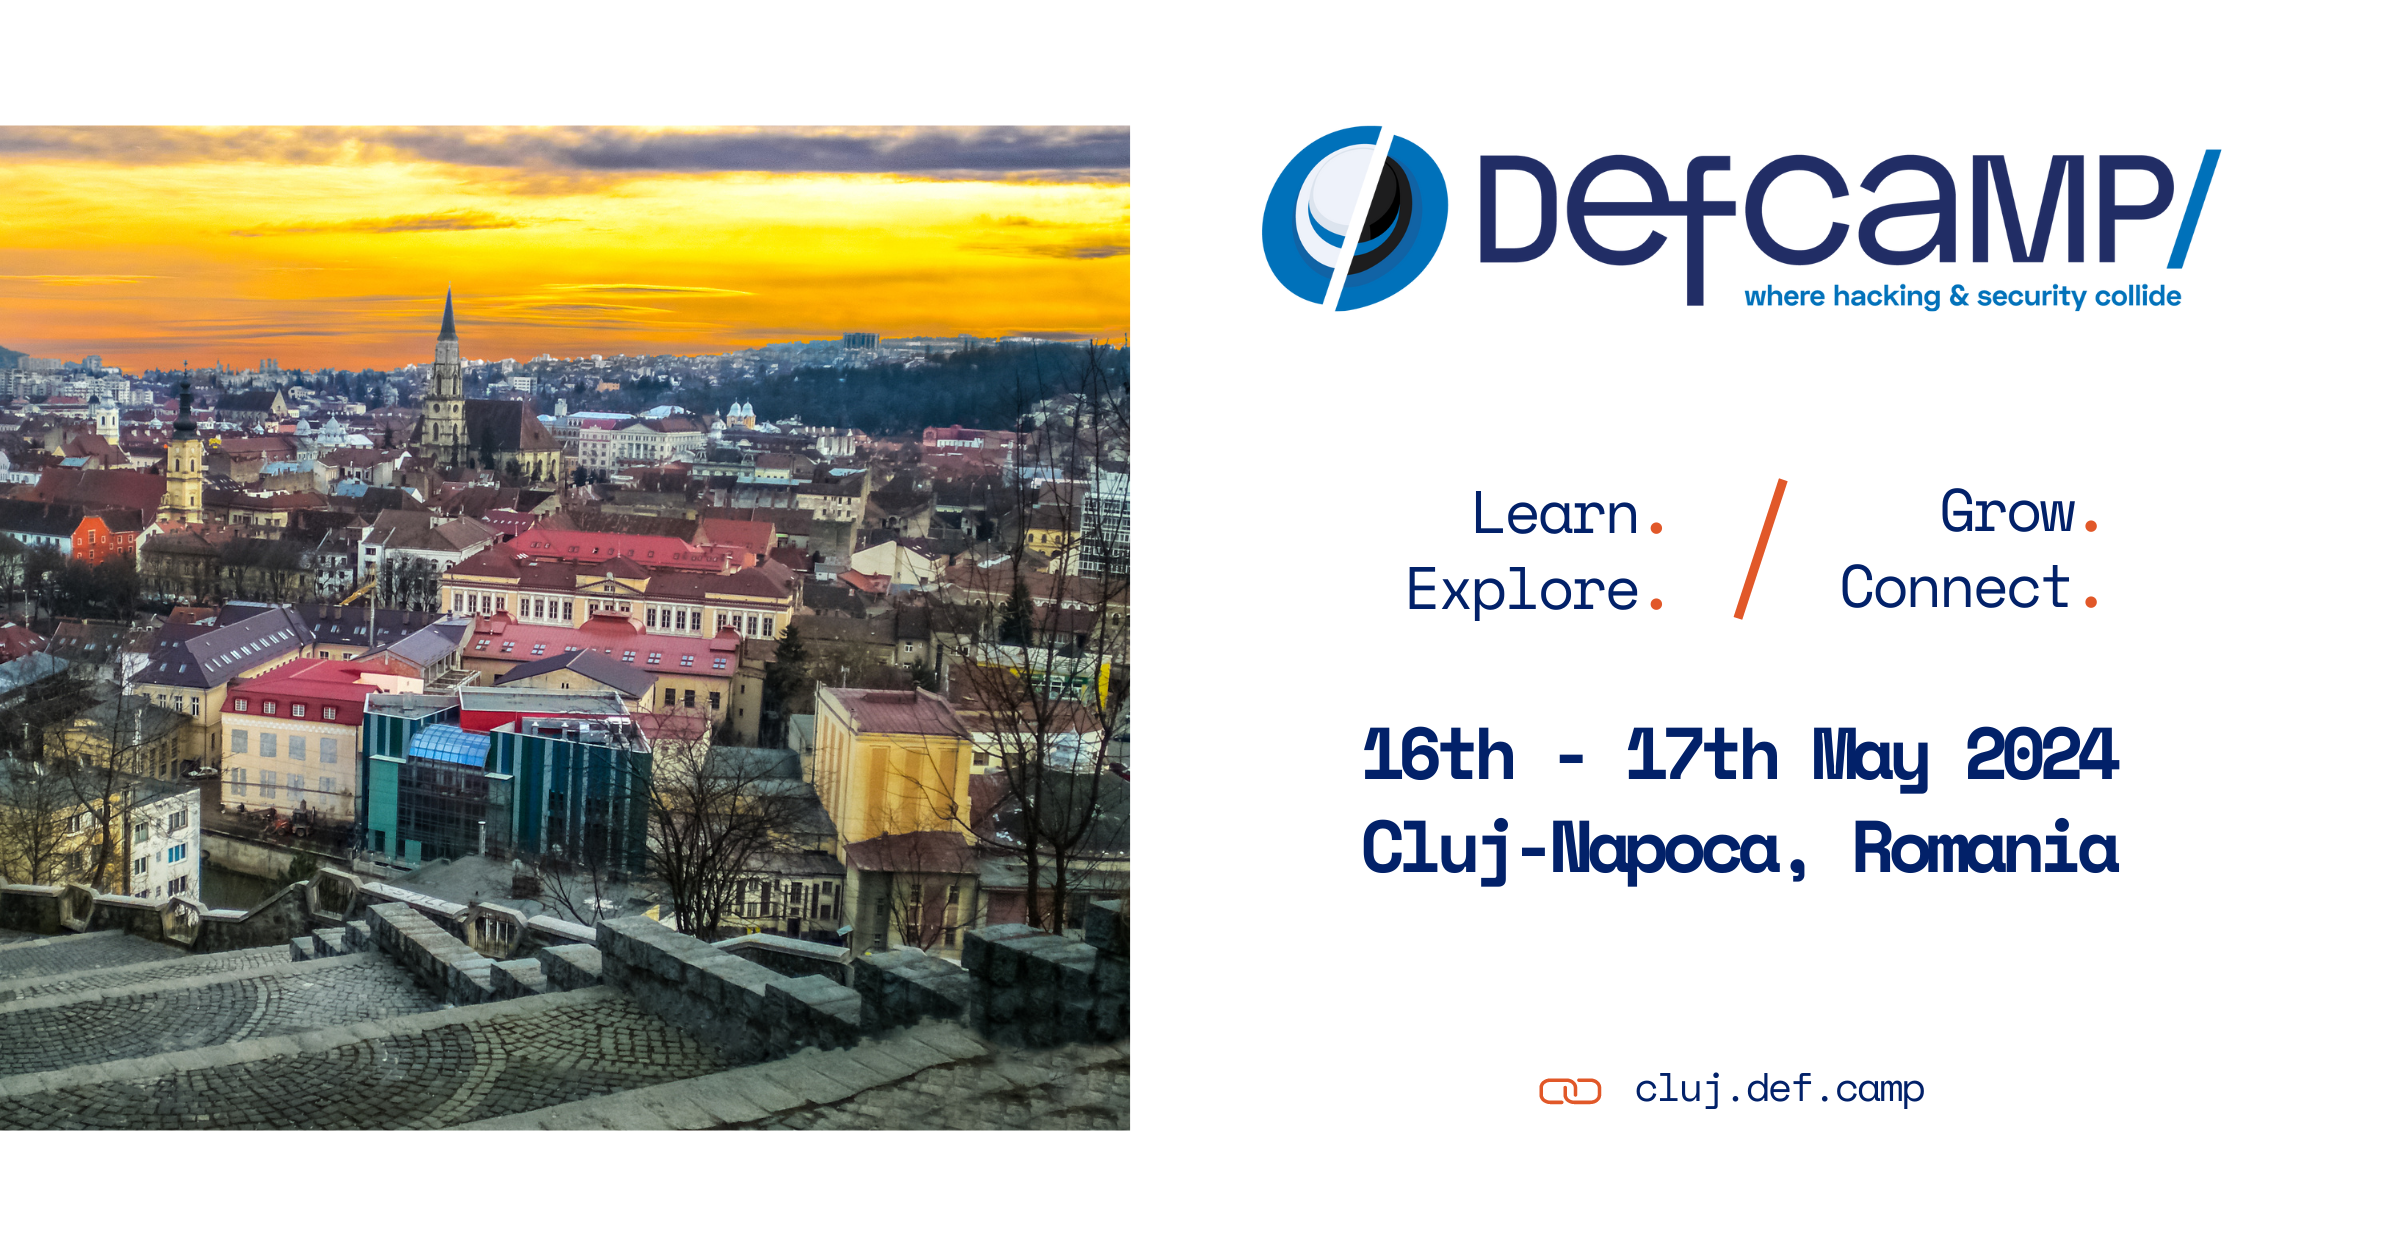 DefCamp, cea mai mare conferință de securitate cibernetică din Europa Centrală și de Est, se extinde cu o primă ediție spin-off în Cluj-Napoca, între 16 și 17 mai